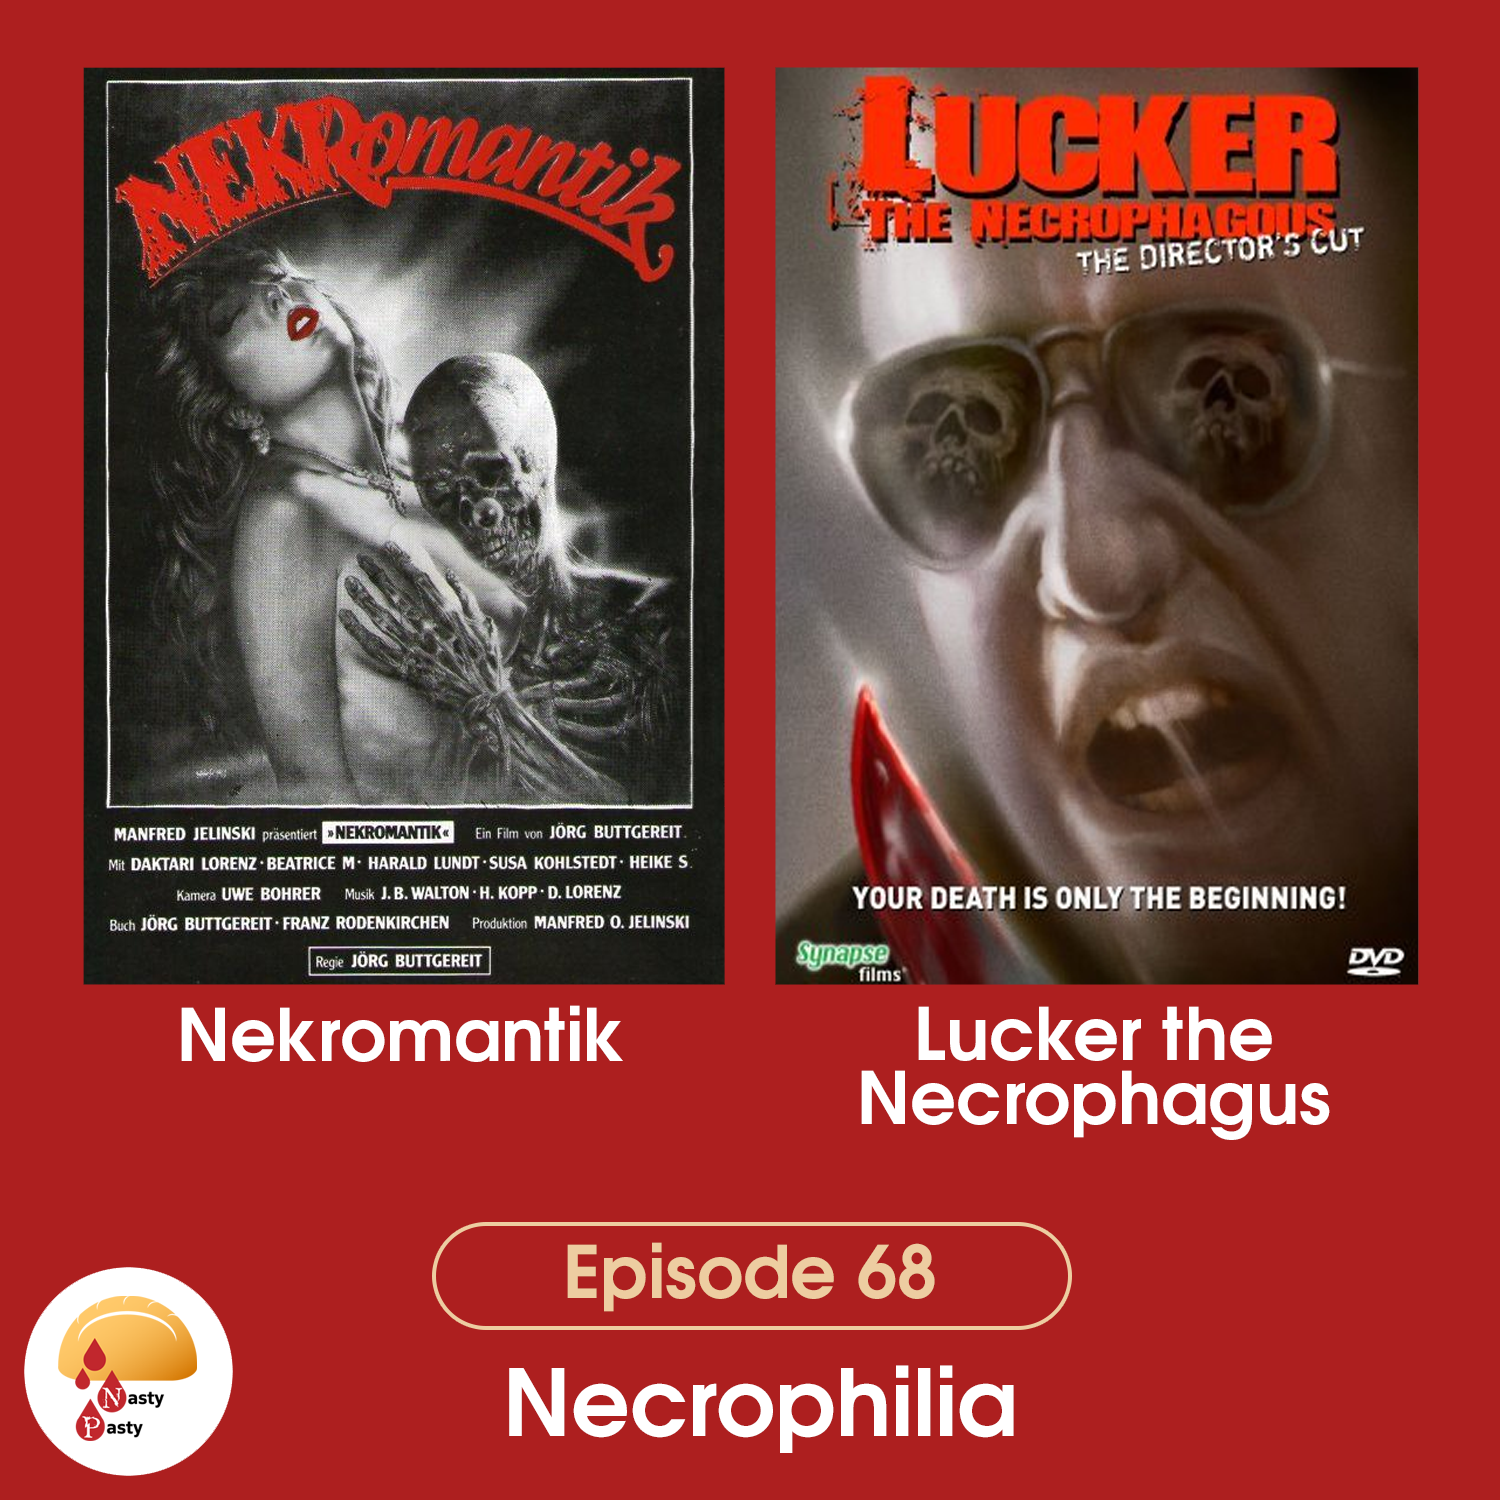 Episode 68: Necrophilia